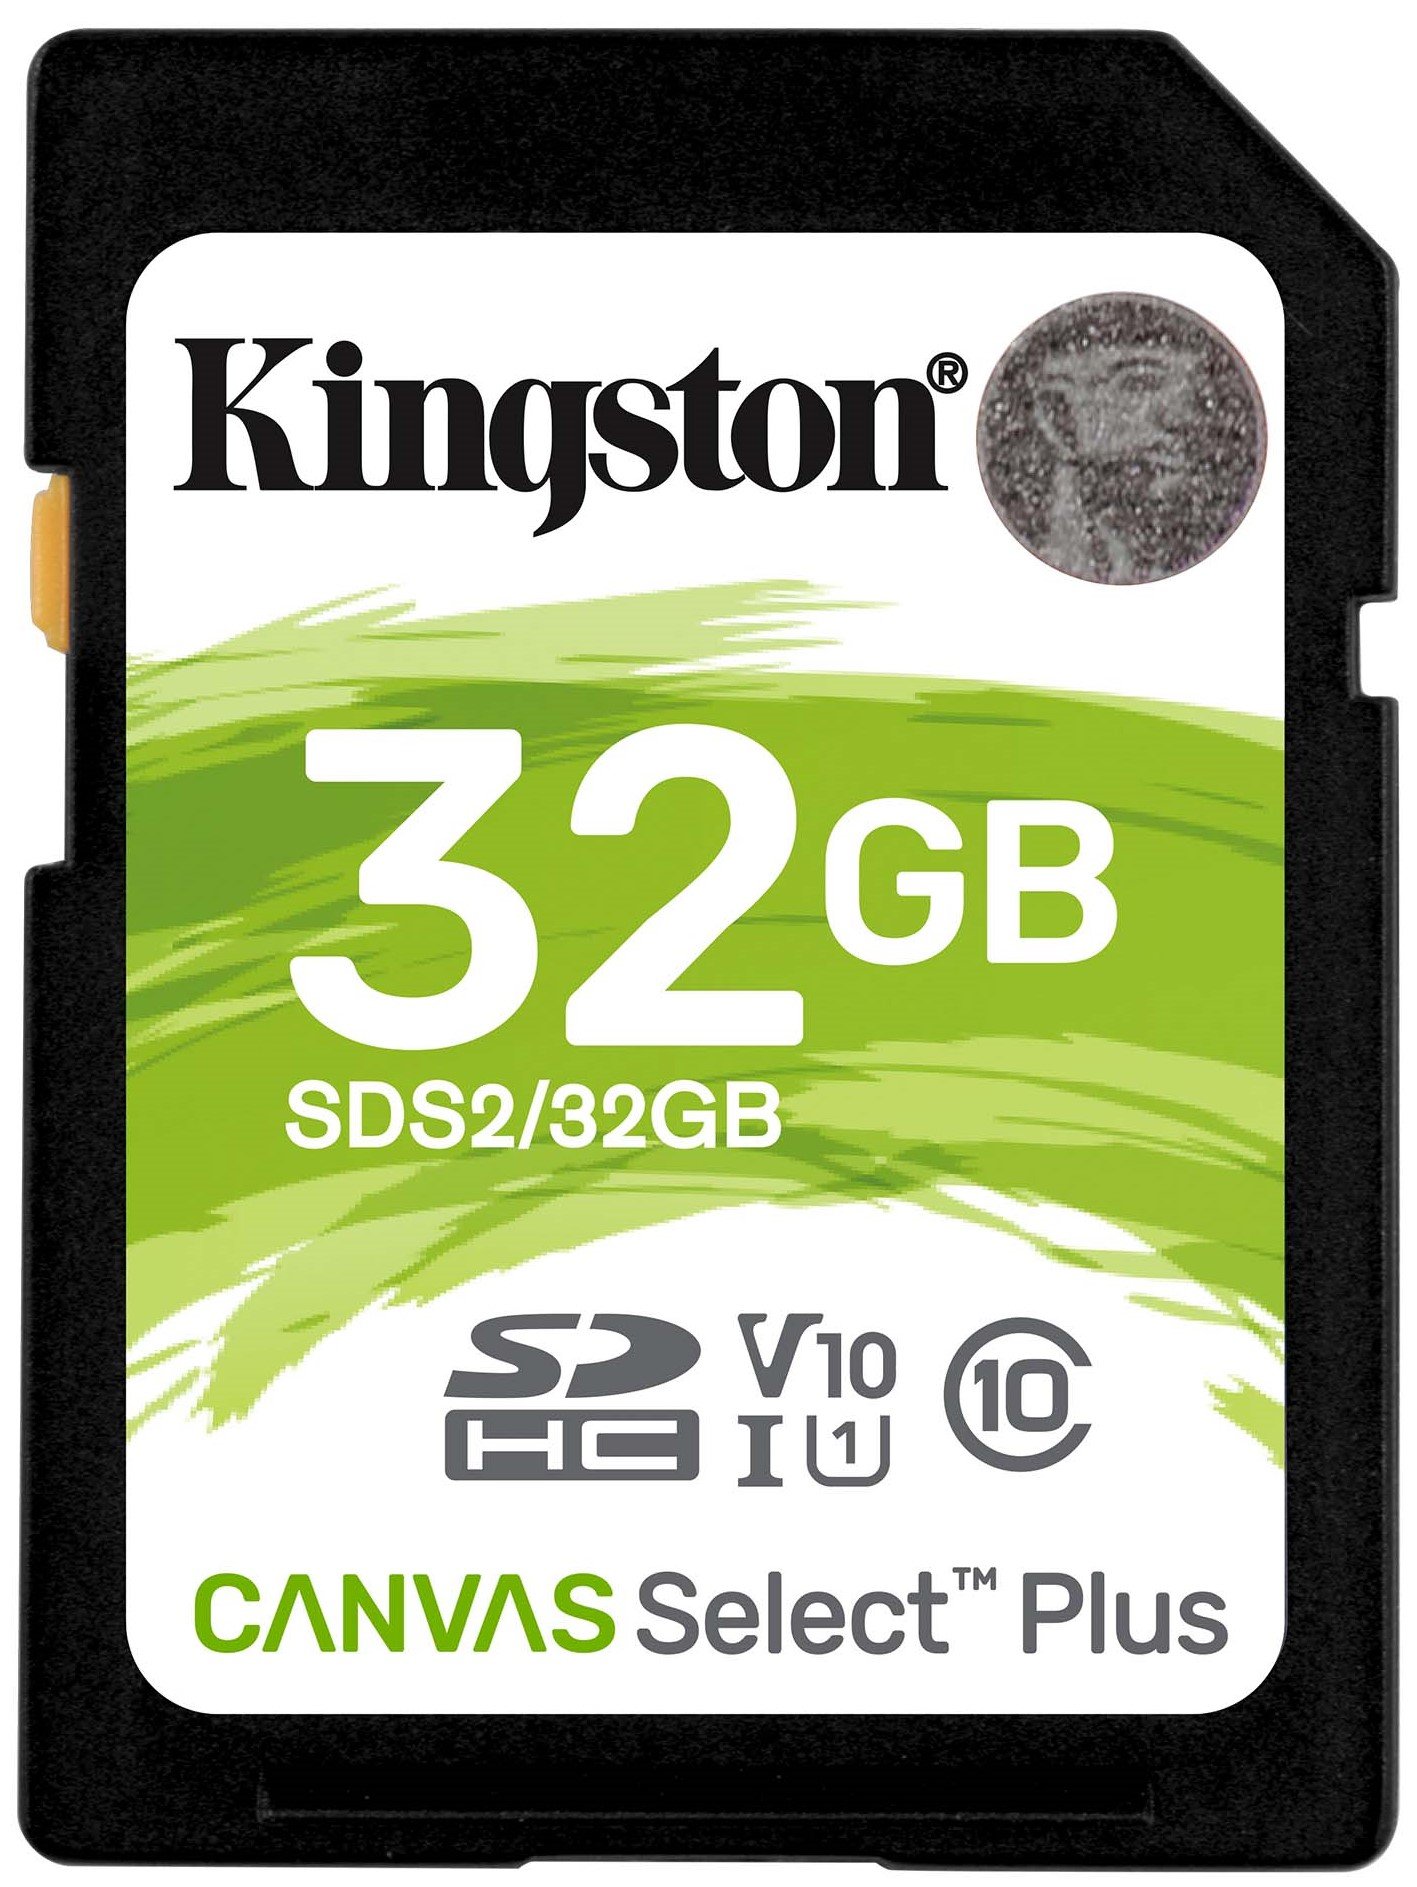 KINGSTON Canvas Select Plus SDHC 32GB Karta pamięci - niskie ceny i opinie  w Media Expert